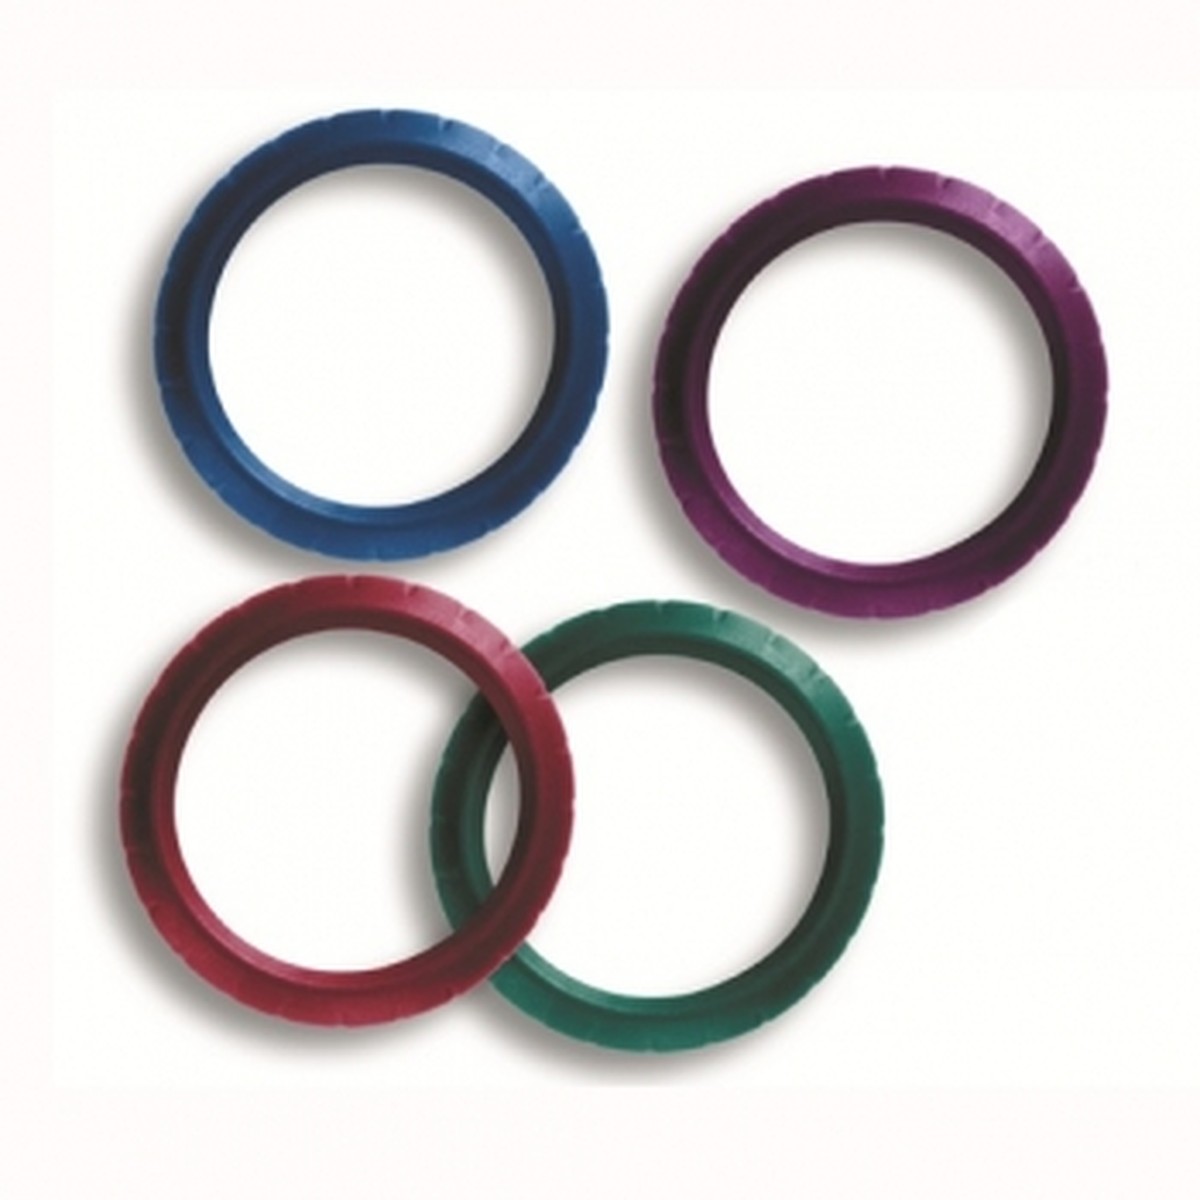 Foto do produto Conjunto de Anéis Colorido p/ Durashock DS44-V Welch Allyn.